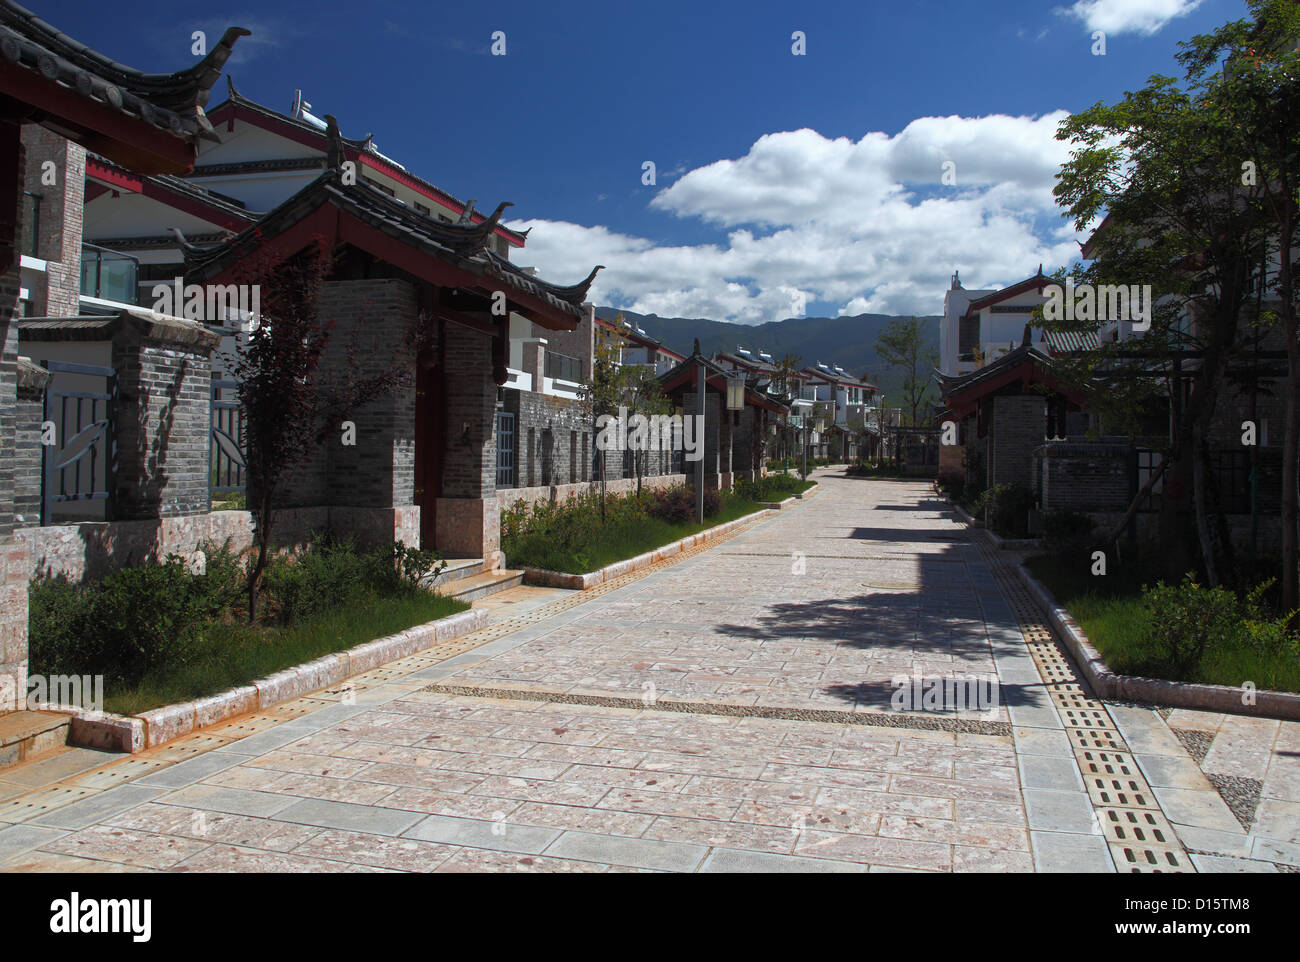 Moderne chinesische Wohngebiet in der Nähe der Stadt Lijiang in der südlichen Provinz Yunnan. Bauen in trad. Naxi Design und Farben in dieser Region. Stockfoto